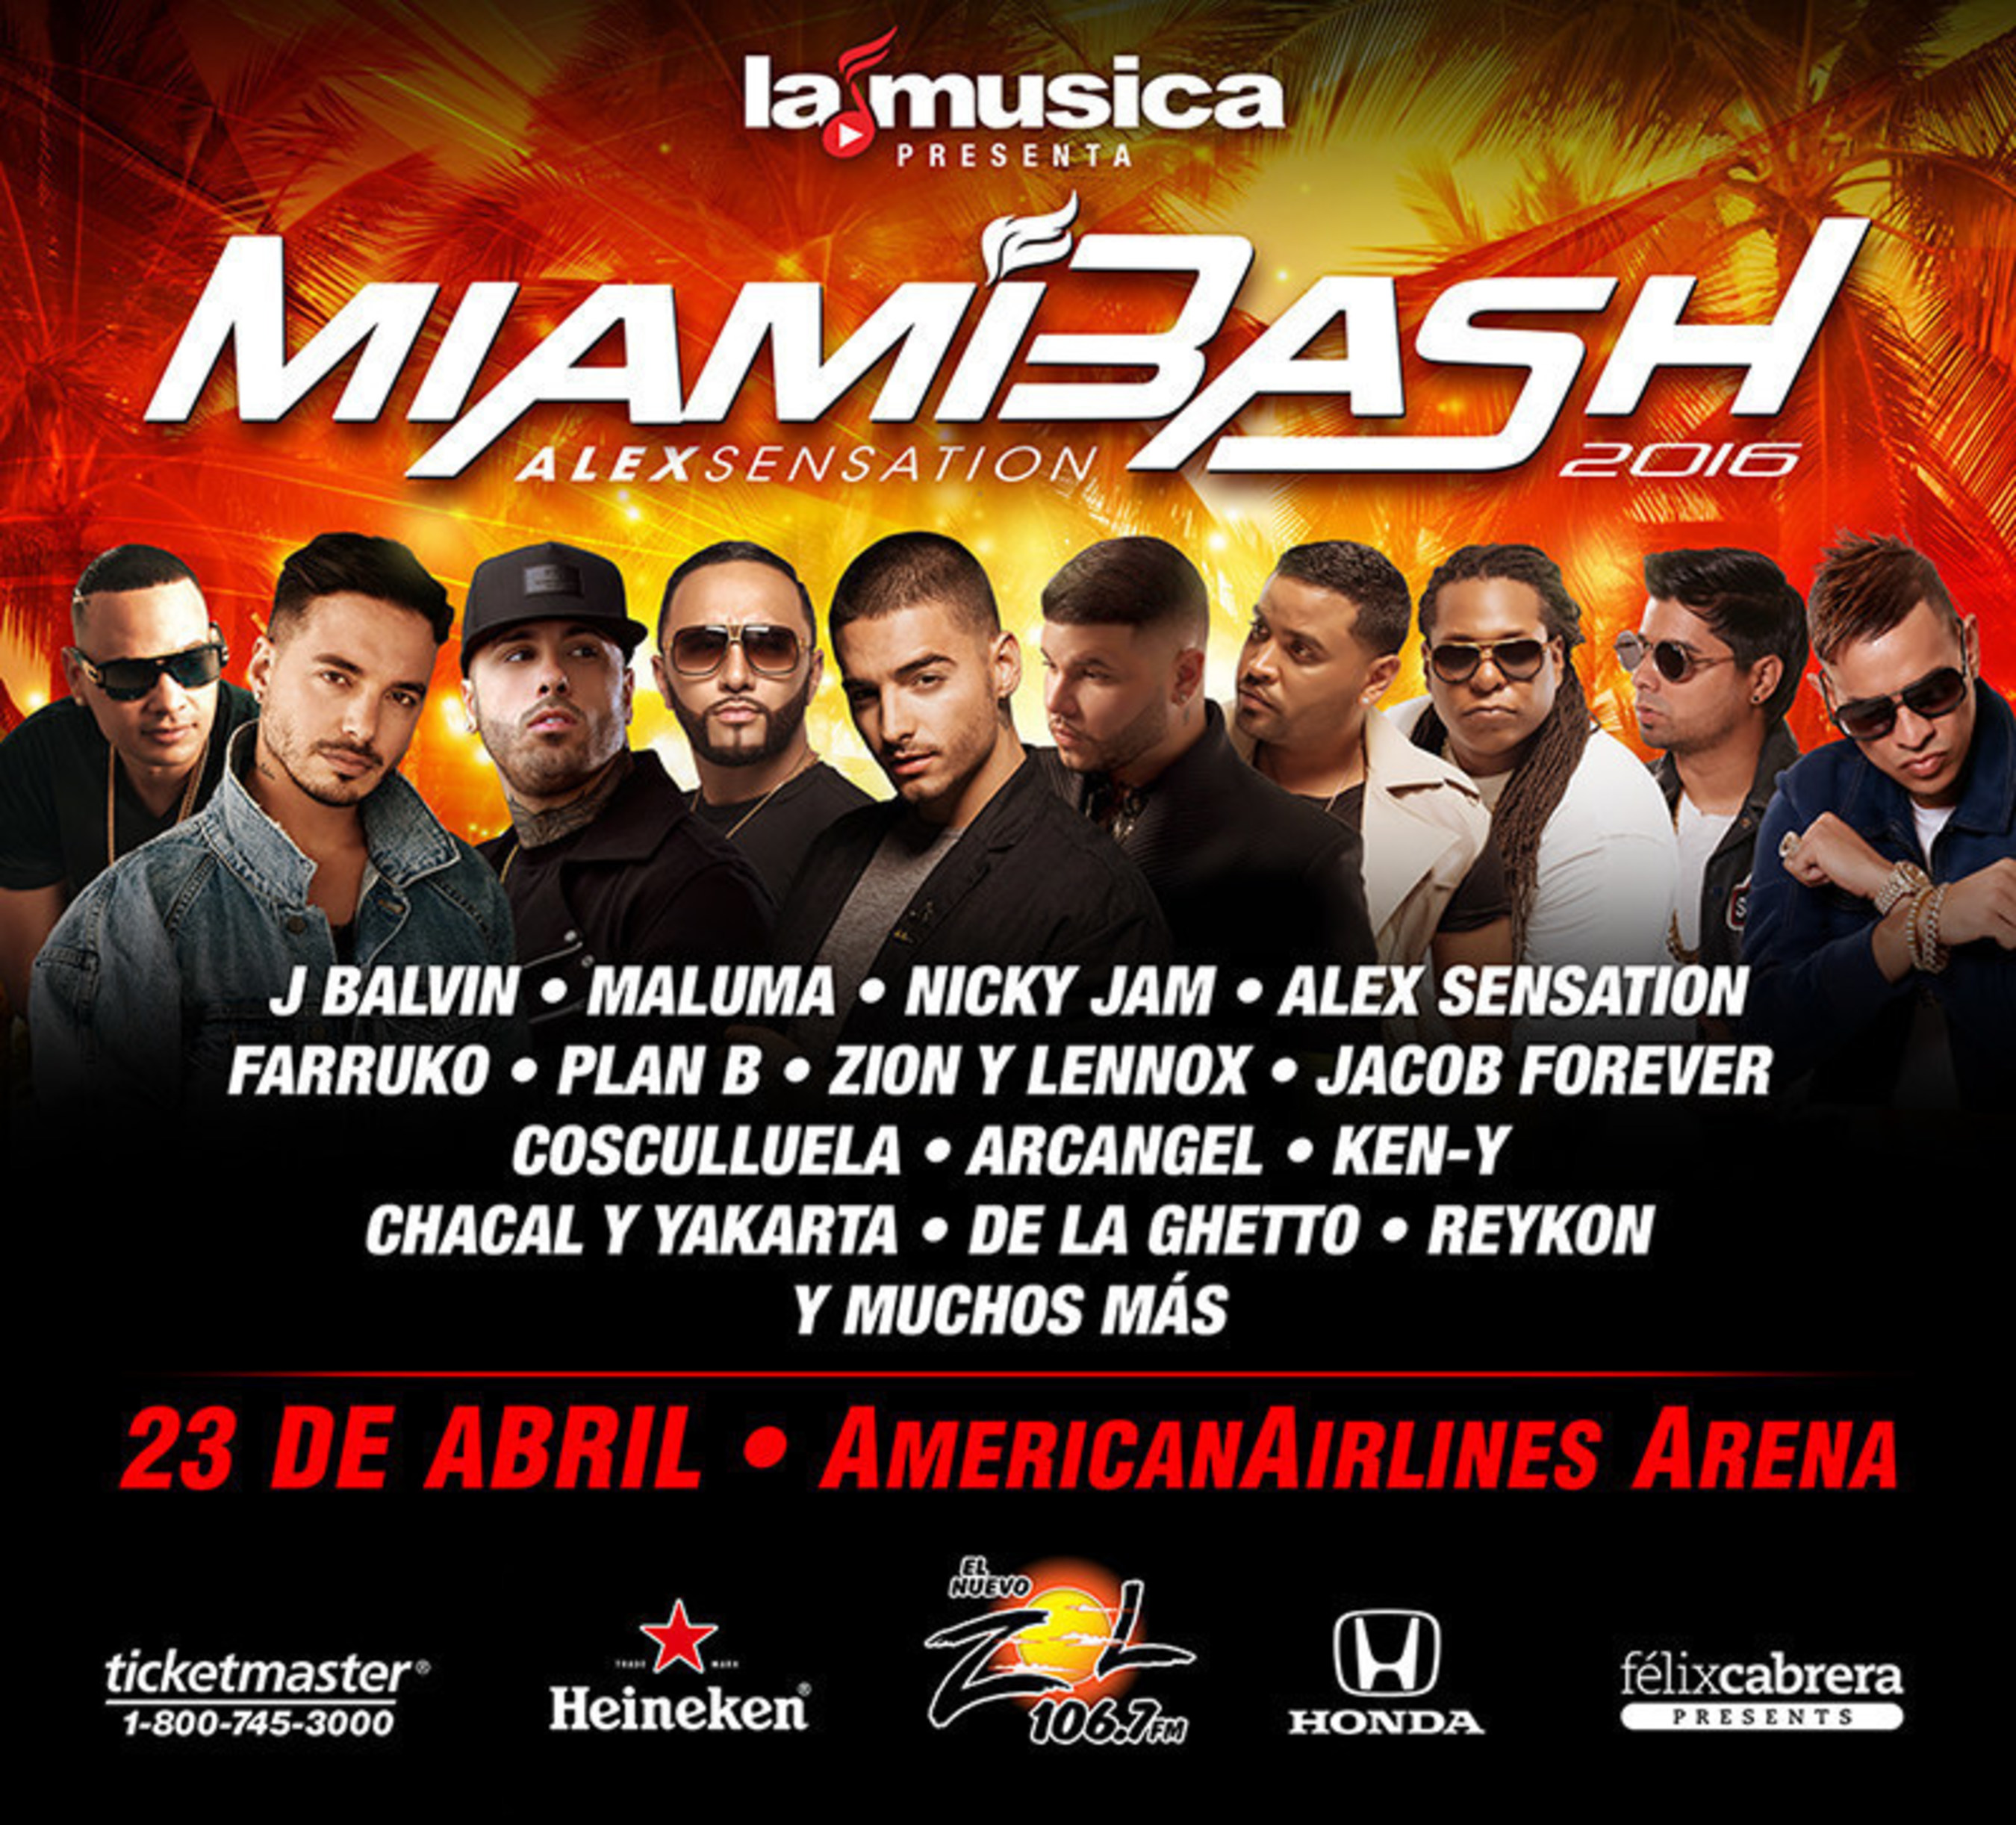 Alex Sensation MiamiBash 2016 el concierto más importante de la música